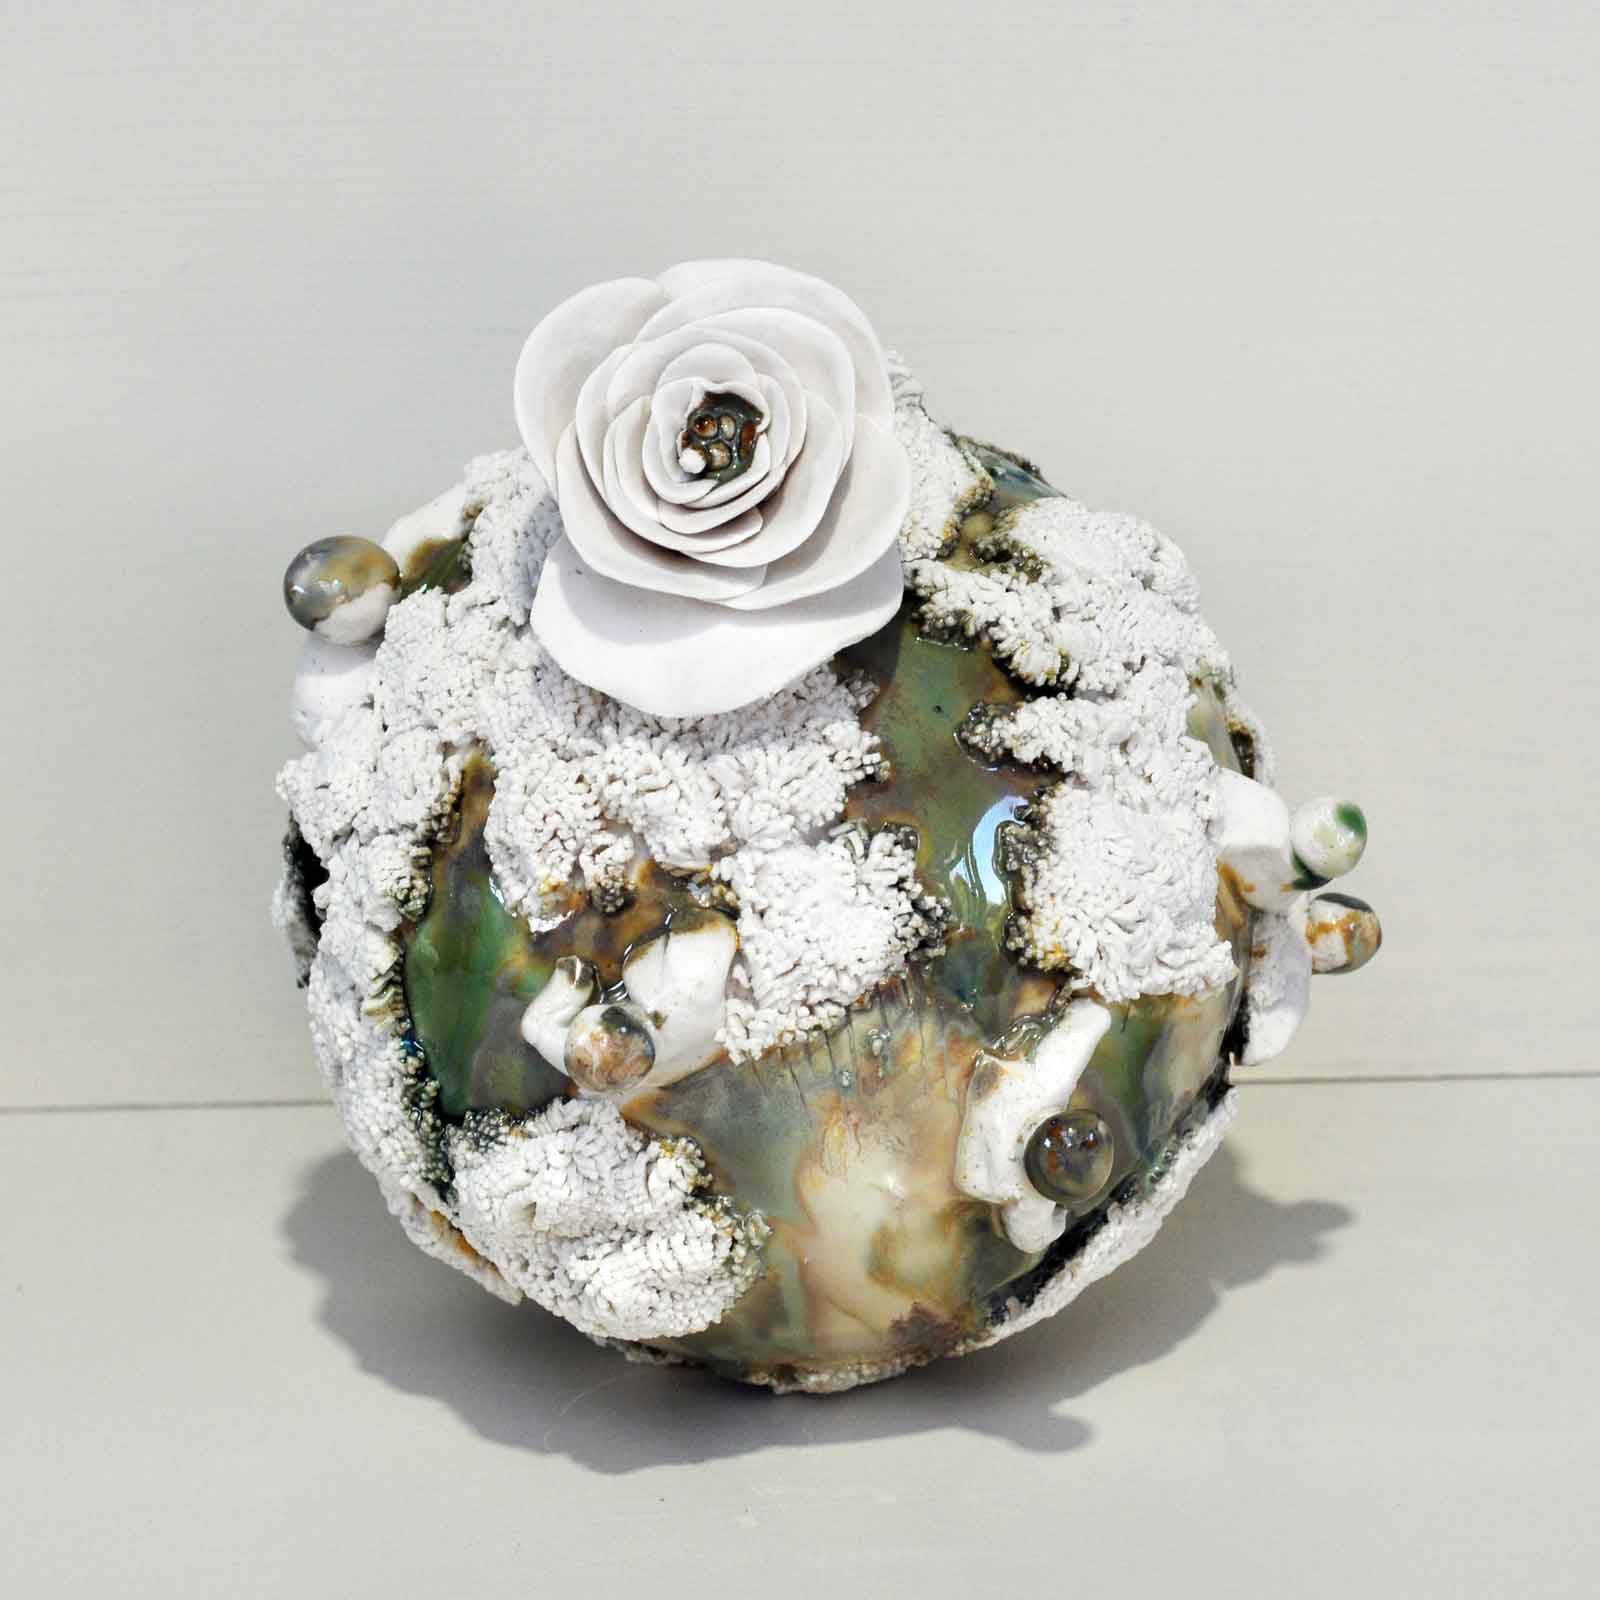 Série -Terre fleur - S D15cm Sphère en porcelaine D25cm ©adagp @Clothildelasserre 2022